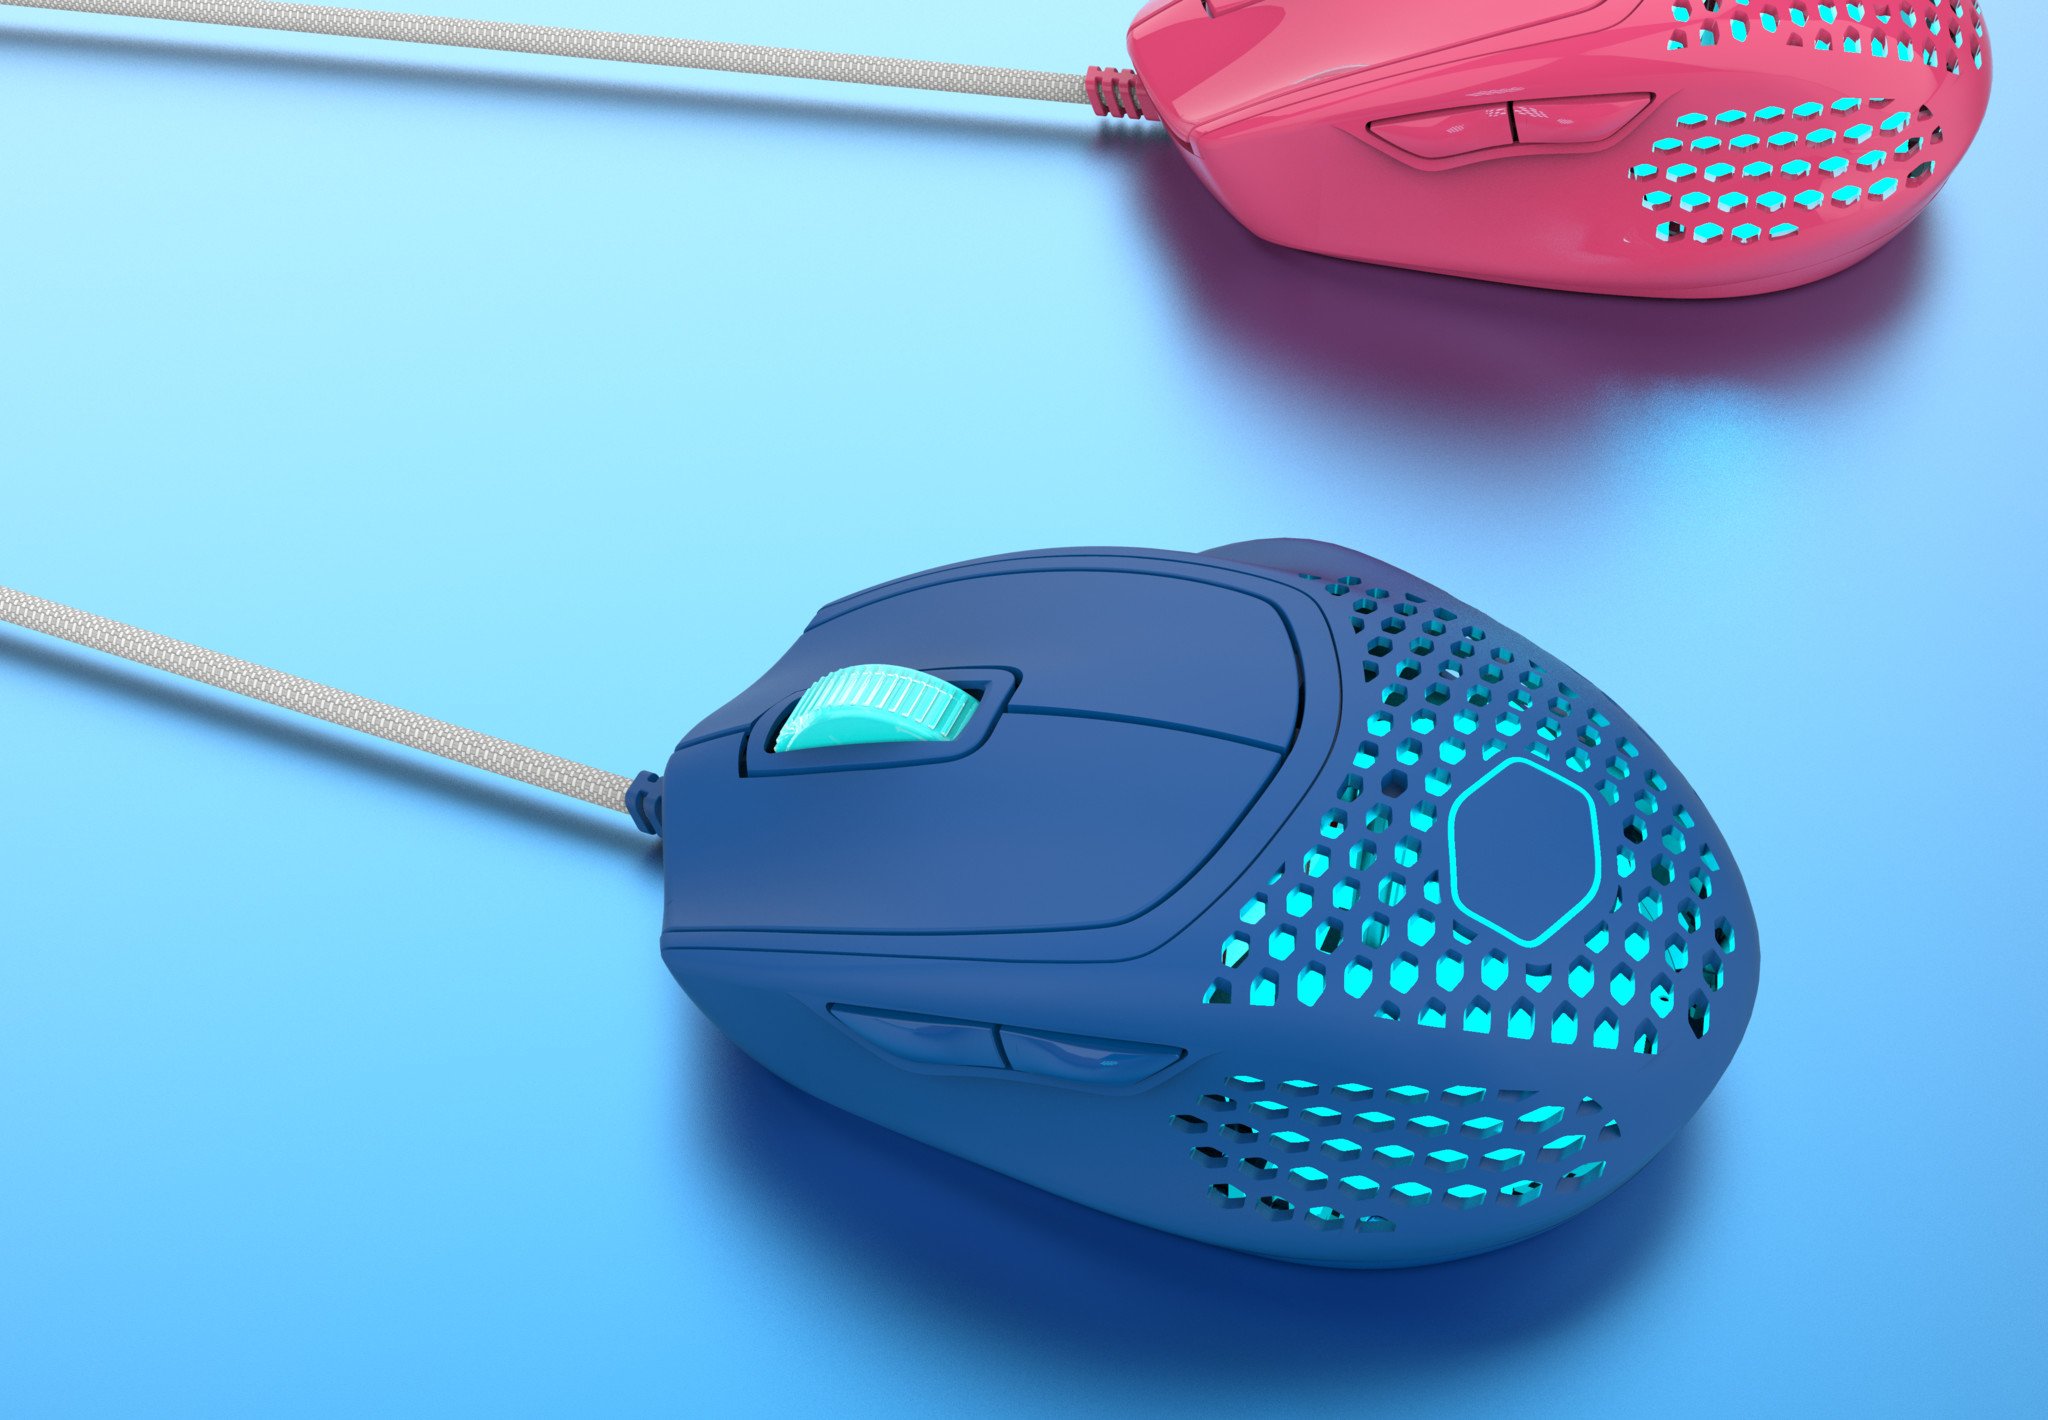 cooler-master-blue-mouse.jpg